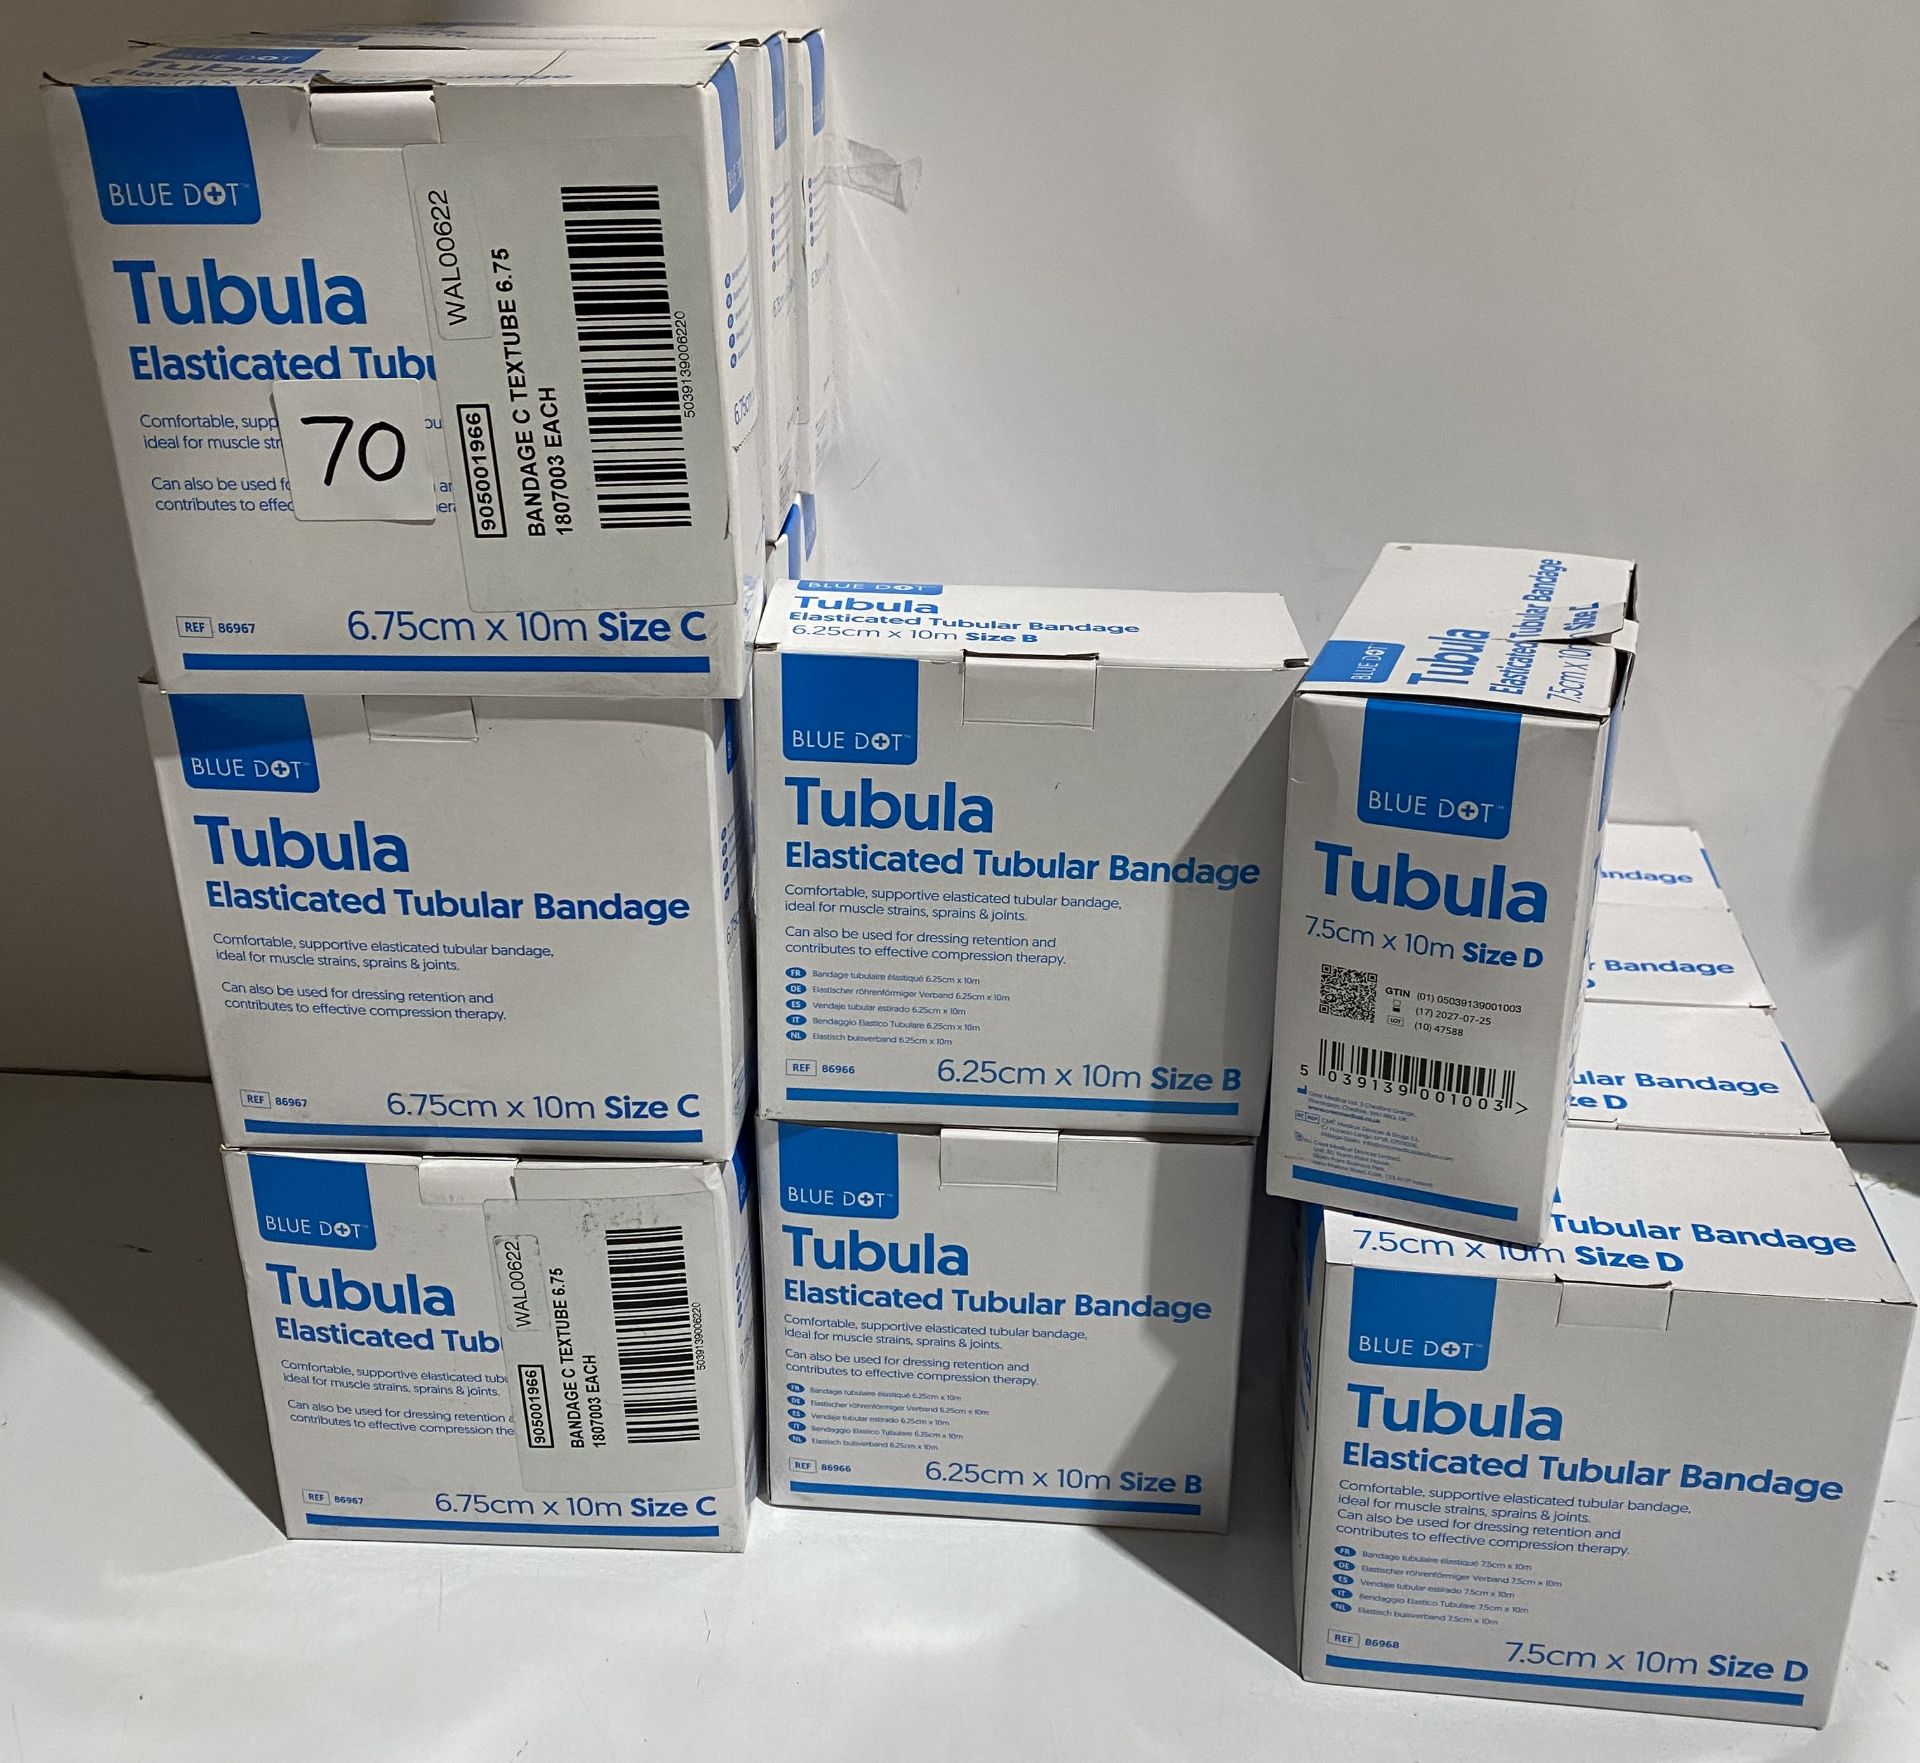 Tubular elasticated support bandage 12 size C 6.75cmx10m (date 20.08.26), 5 x size B 6.